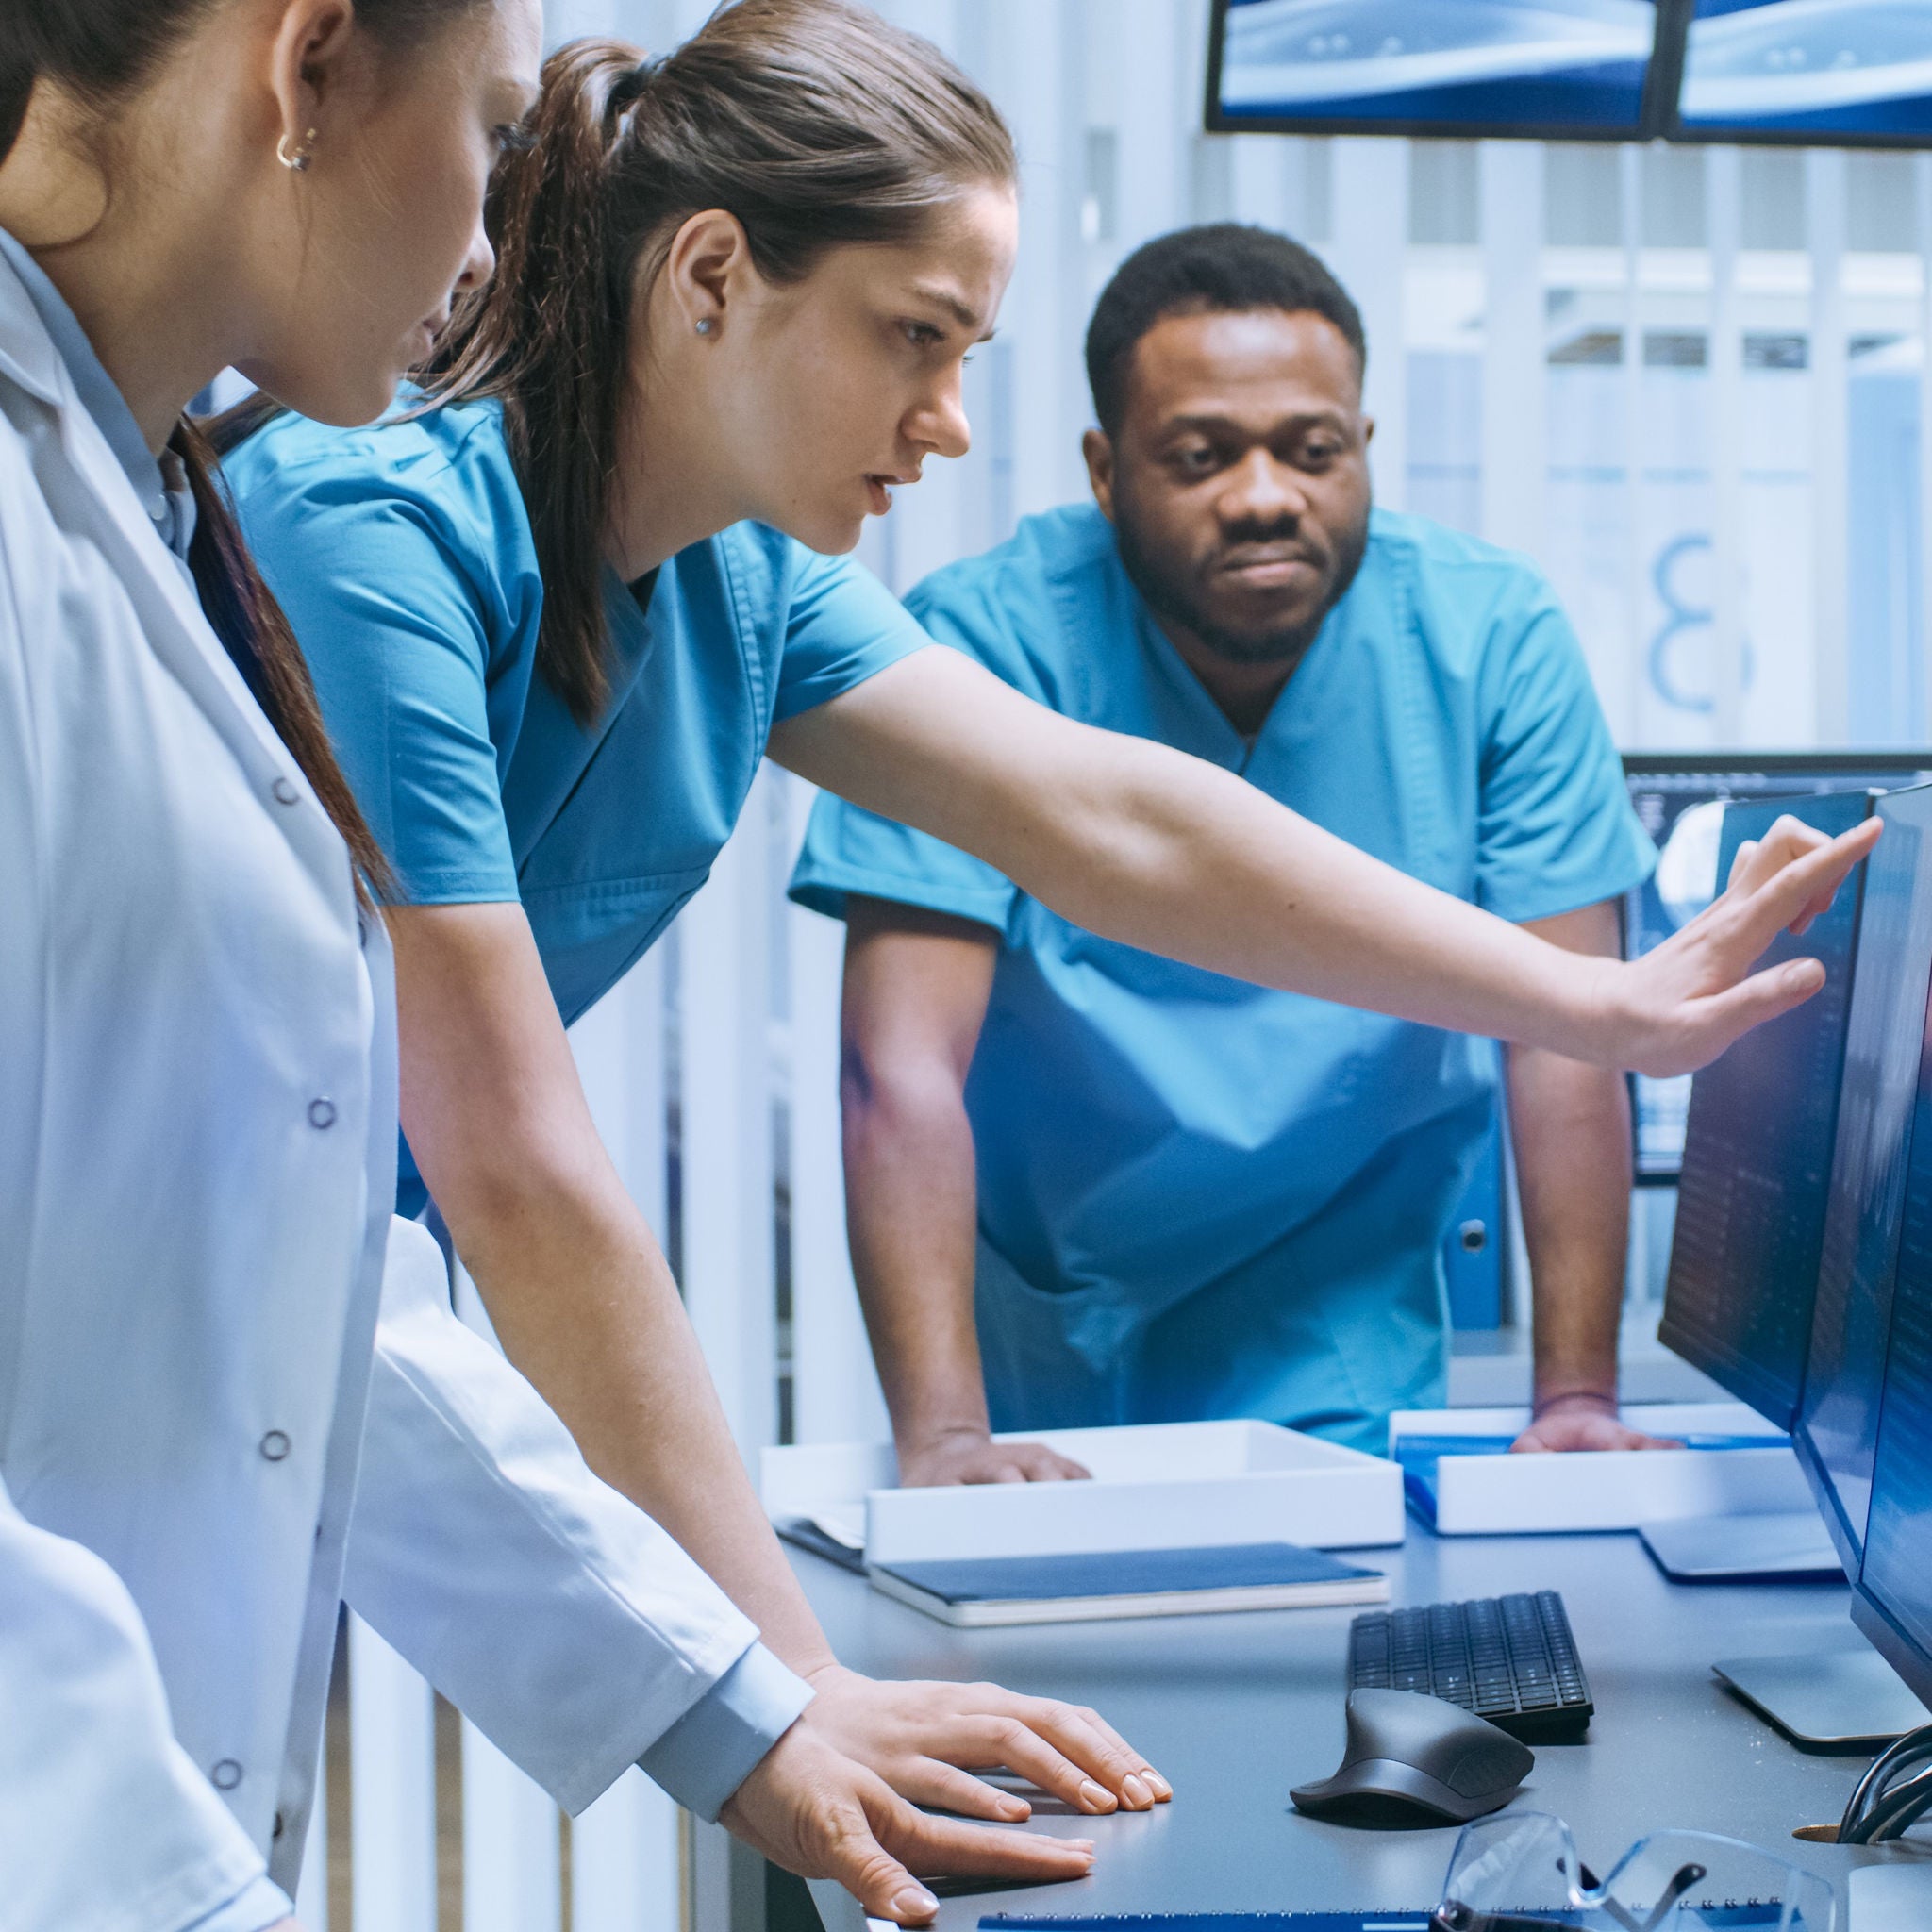 Drei junge Mediziner in Klinik-Kleidung stehen an einem Schreibtisch und deuten auf einen Bildschirm